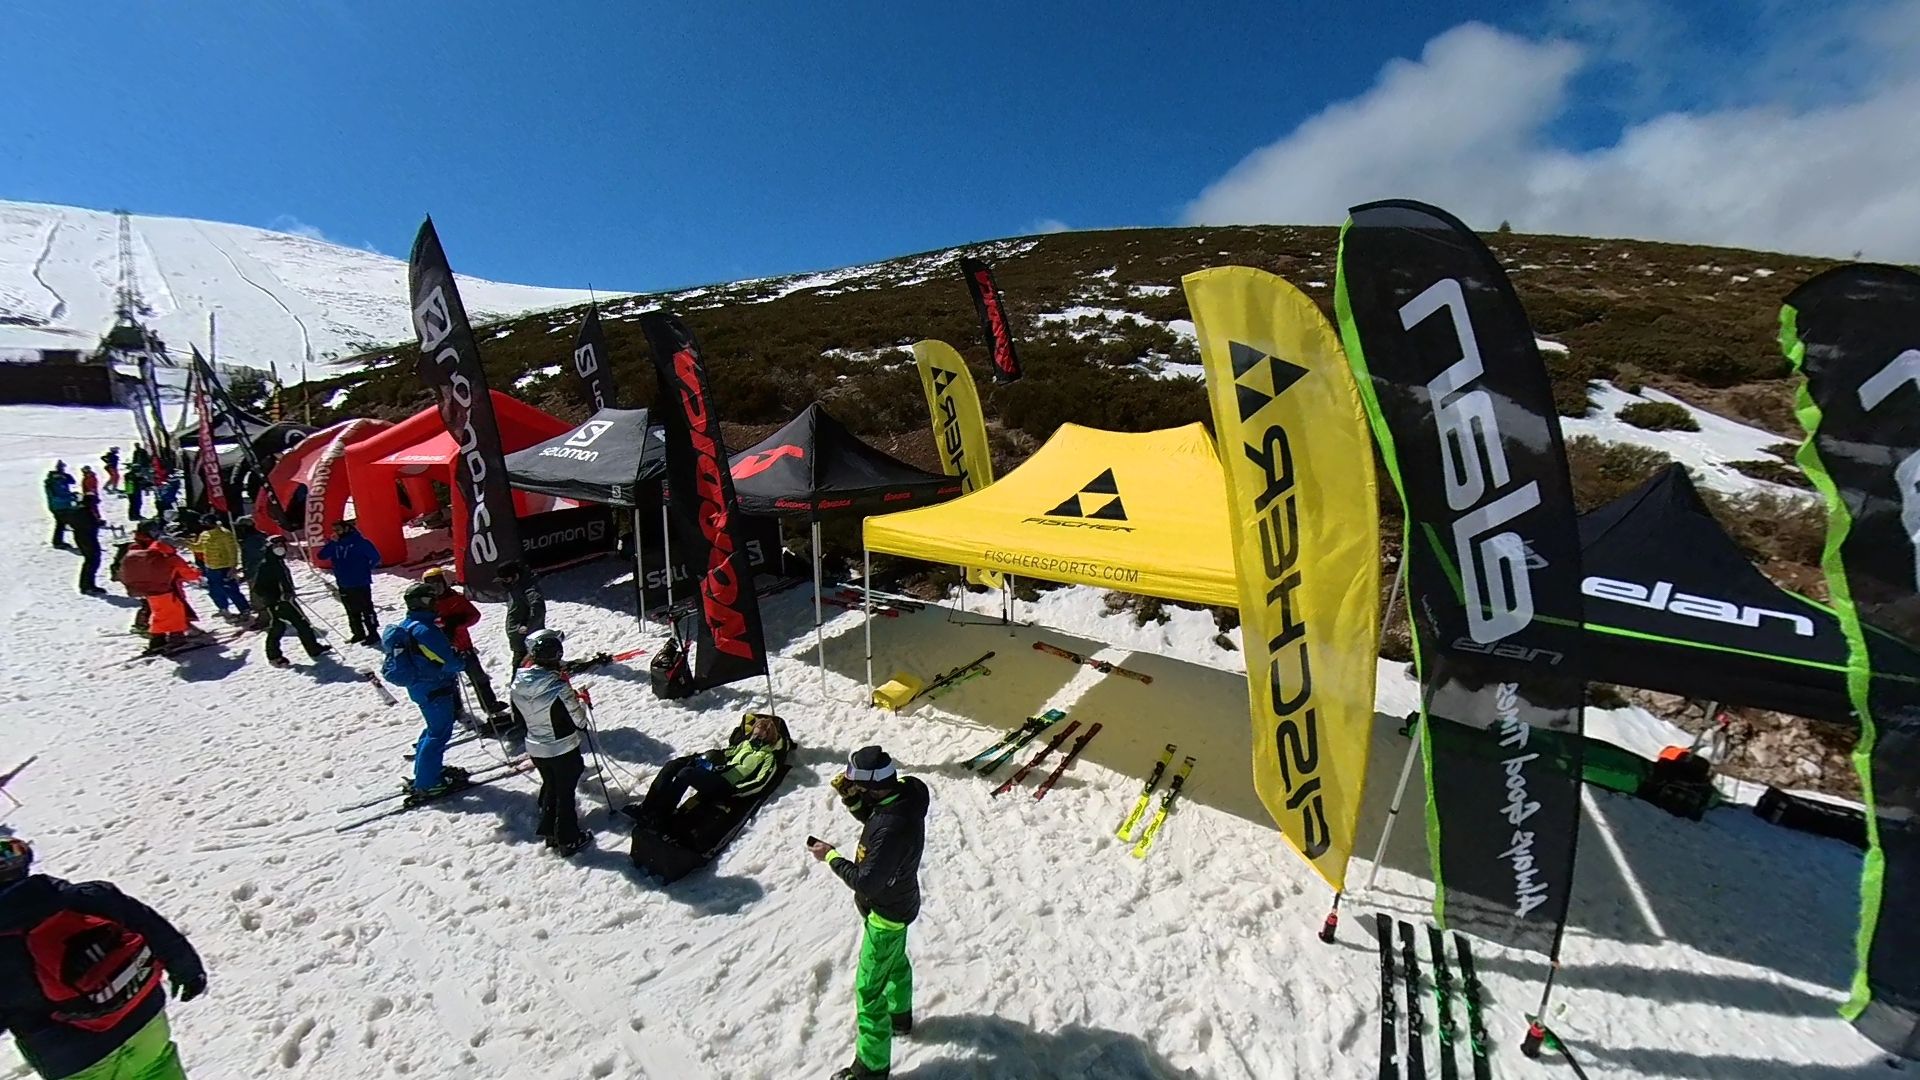 El mayor test de esquís de Europa en Valdesquí - 110% SKI - Nevasport.com